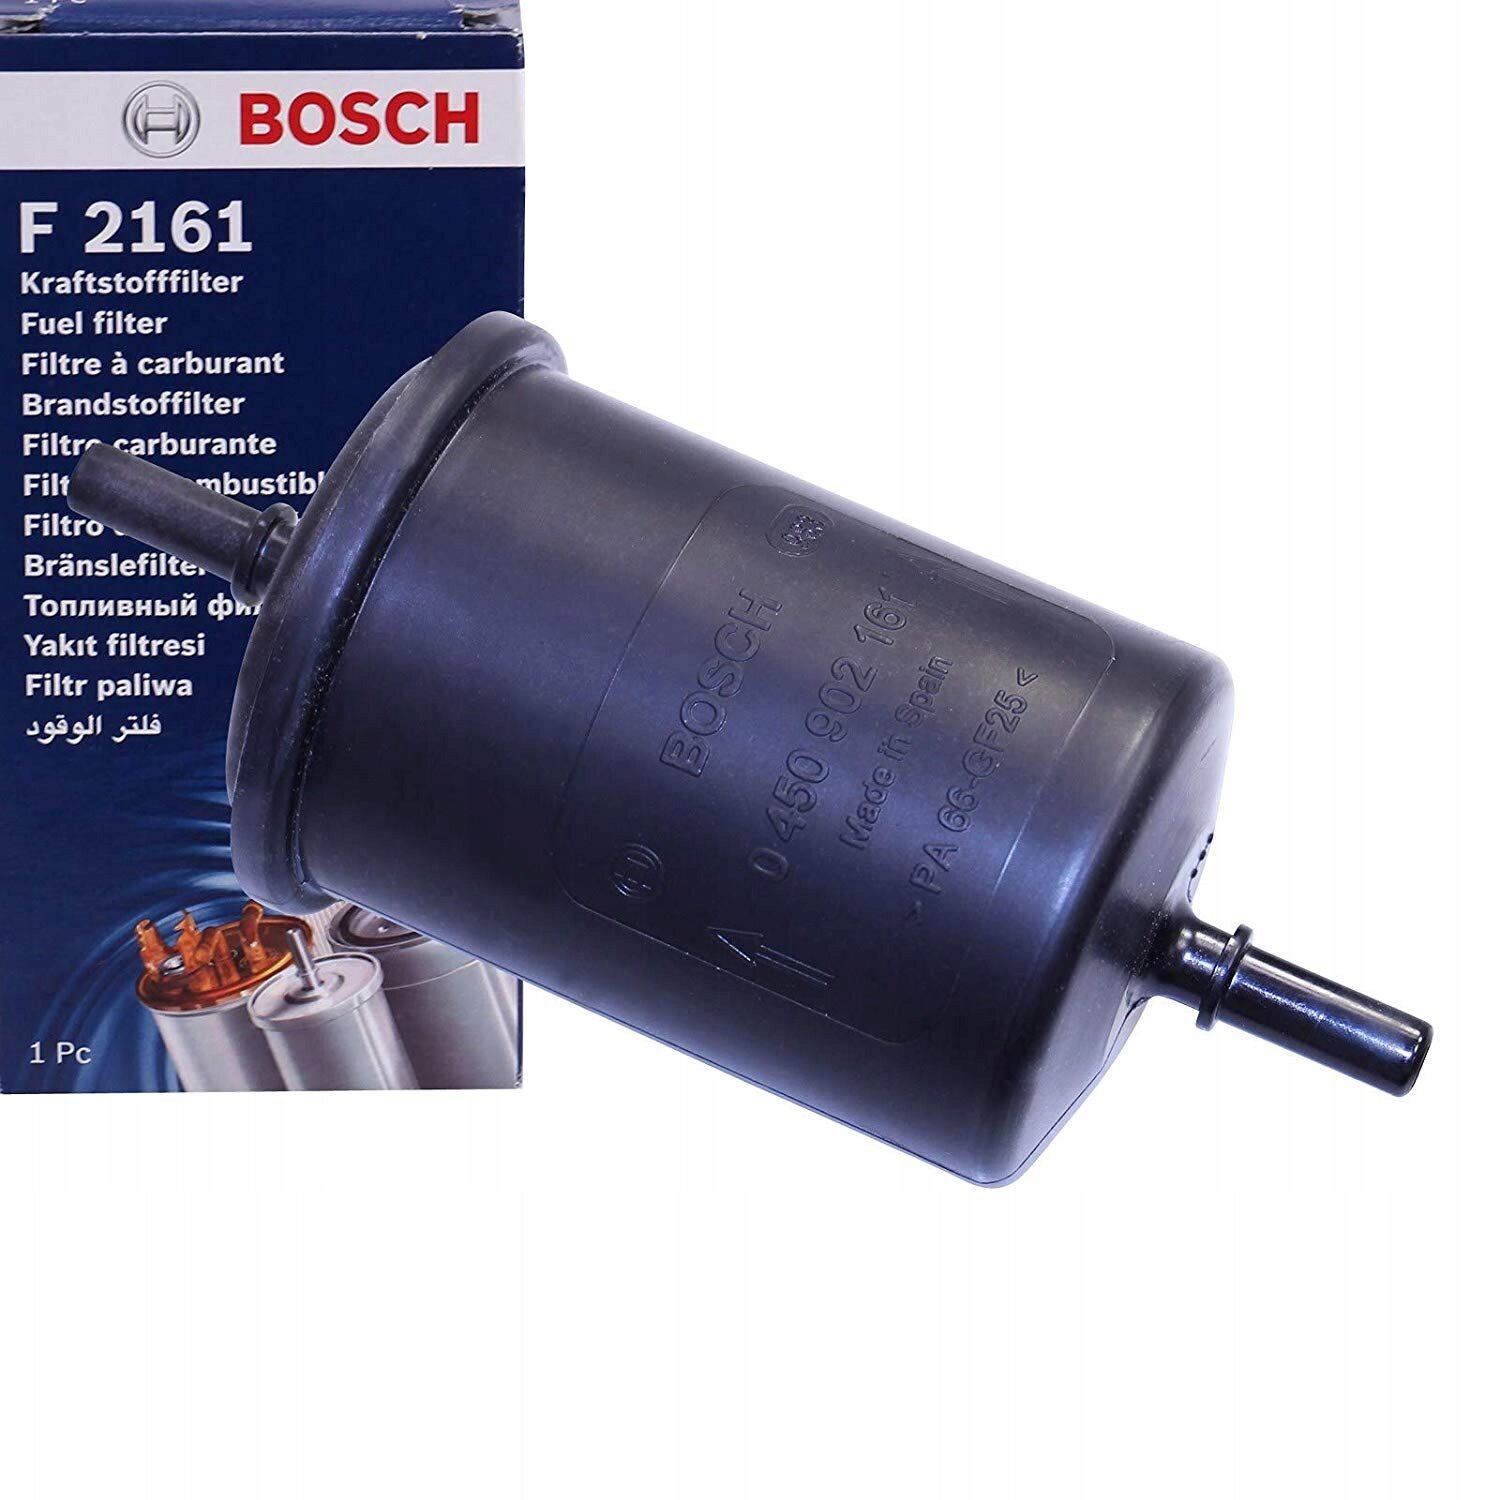 Фильтр топливный для Пежо 308 2007-2011 год выпуска (Peugeot 308) BOSCH 0 450 902 161